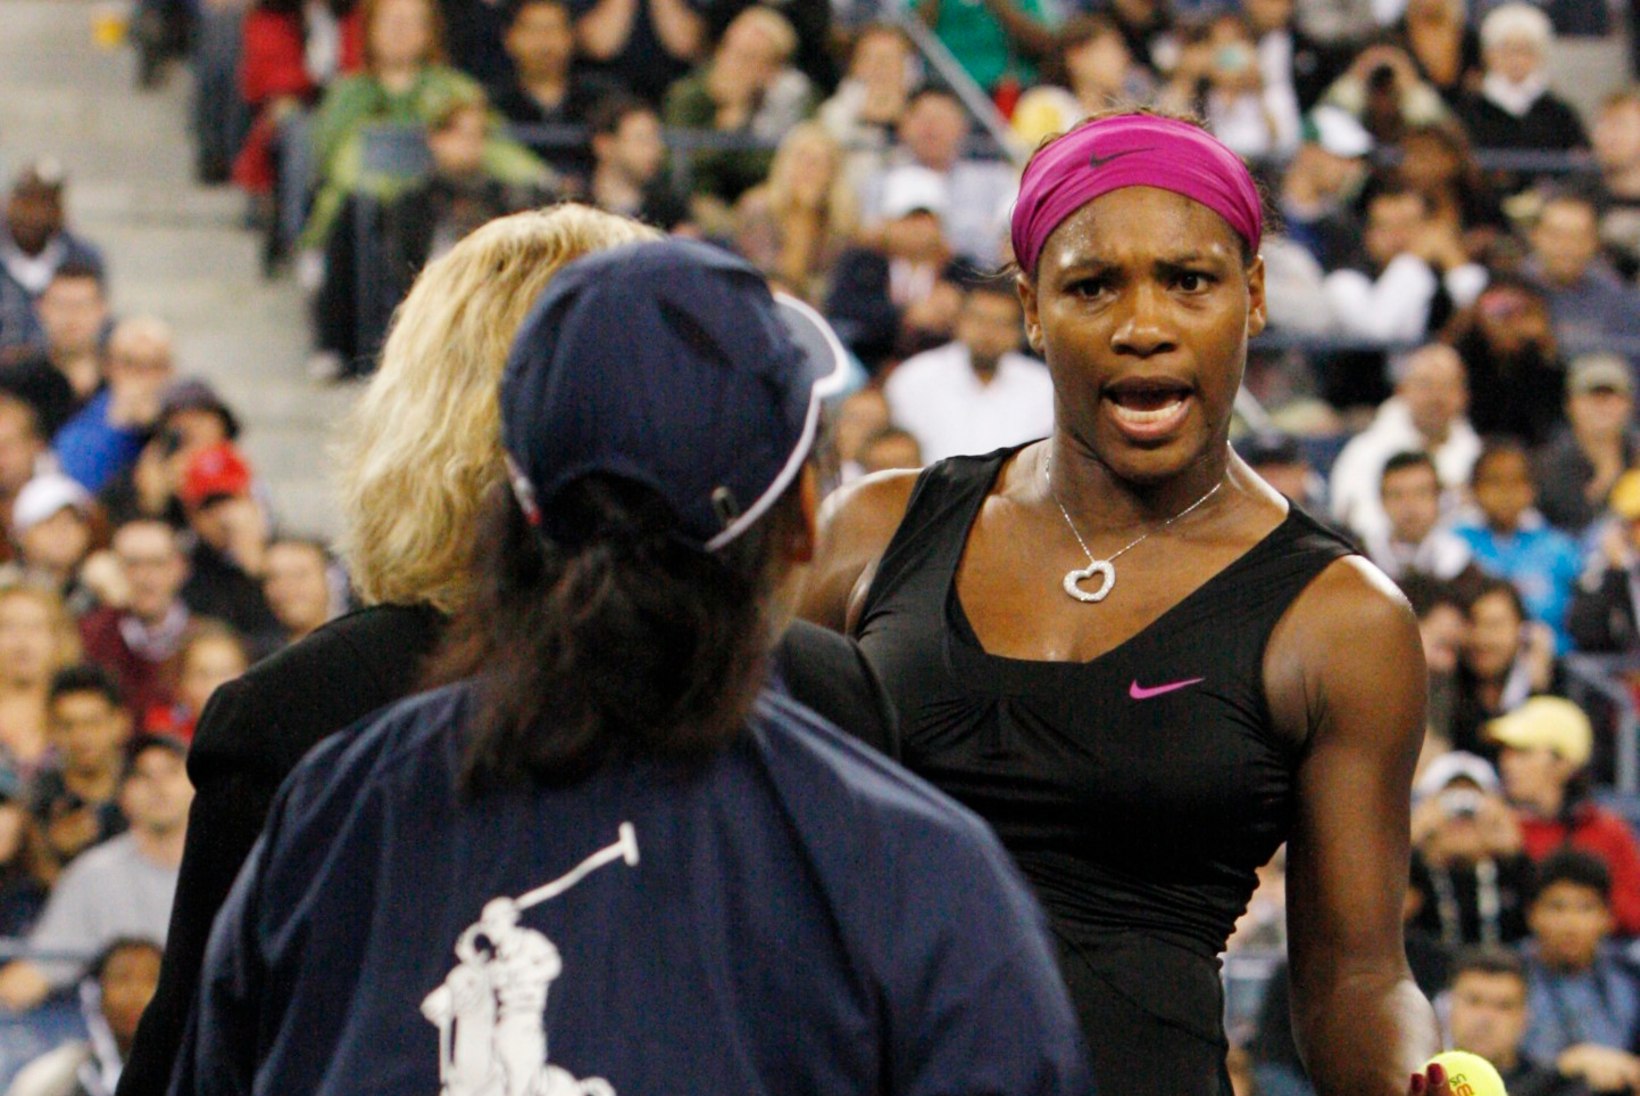 VIDEOMEENUTUS: Serena Williams on varemgi US Openil enesevalitsuses kaotanud ning kohtunikku sõimanud